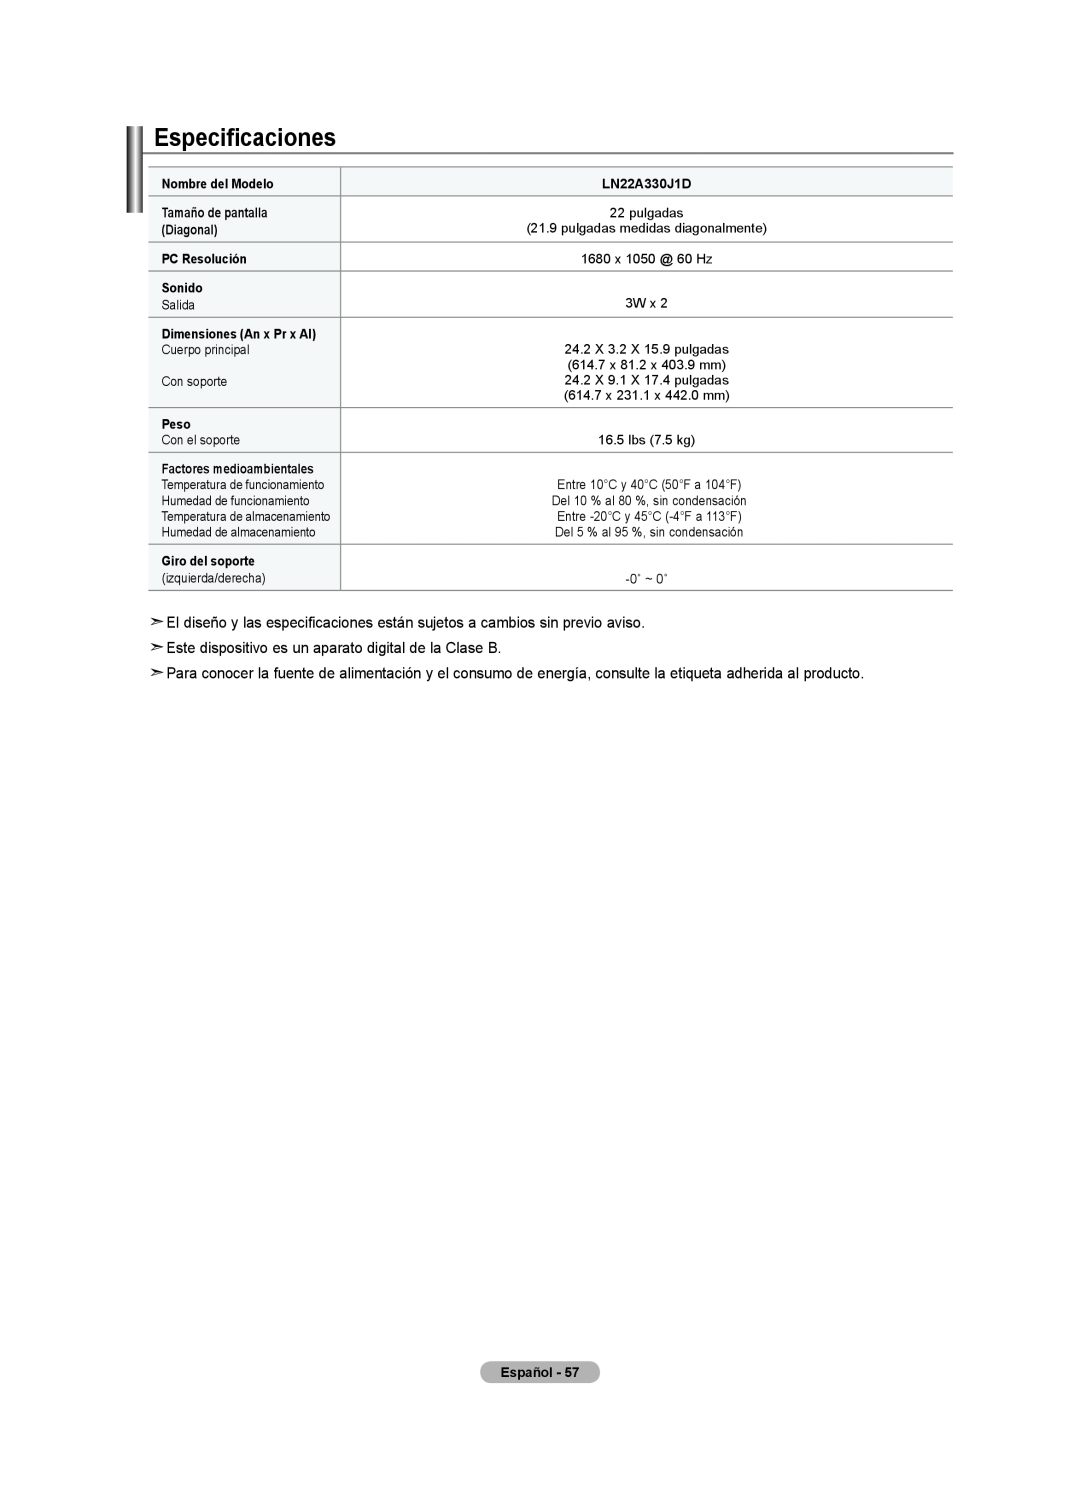 Samsung LN22A330, LN22A0J1D, Series L3 user manual Especificaciones 